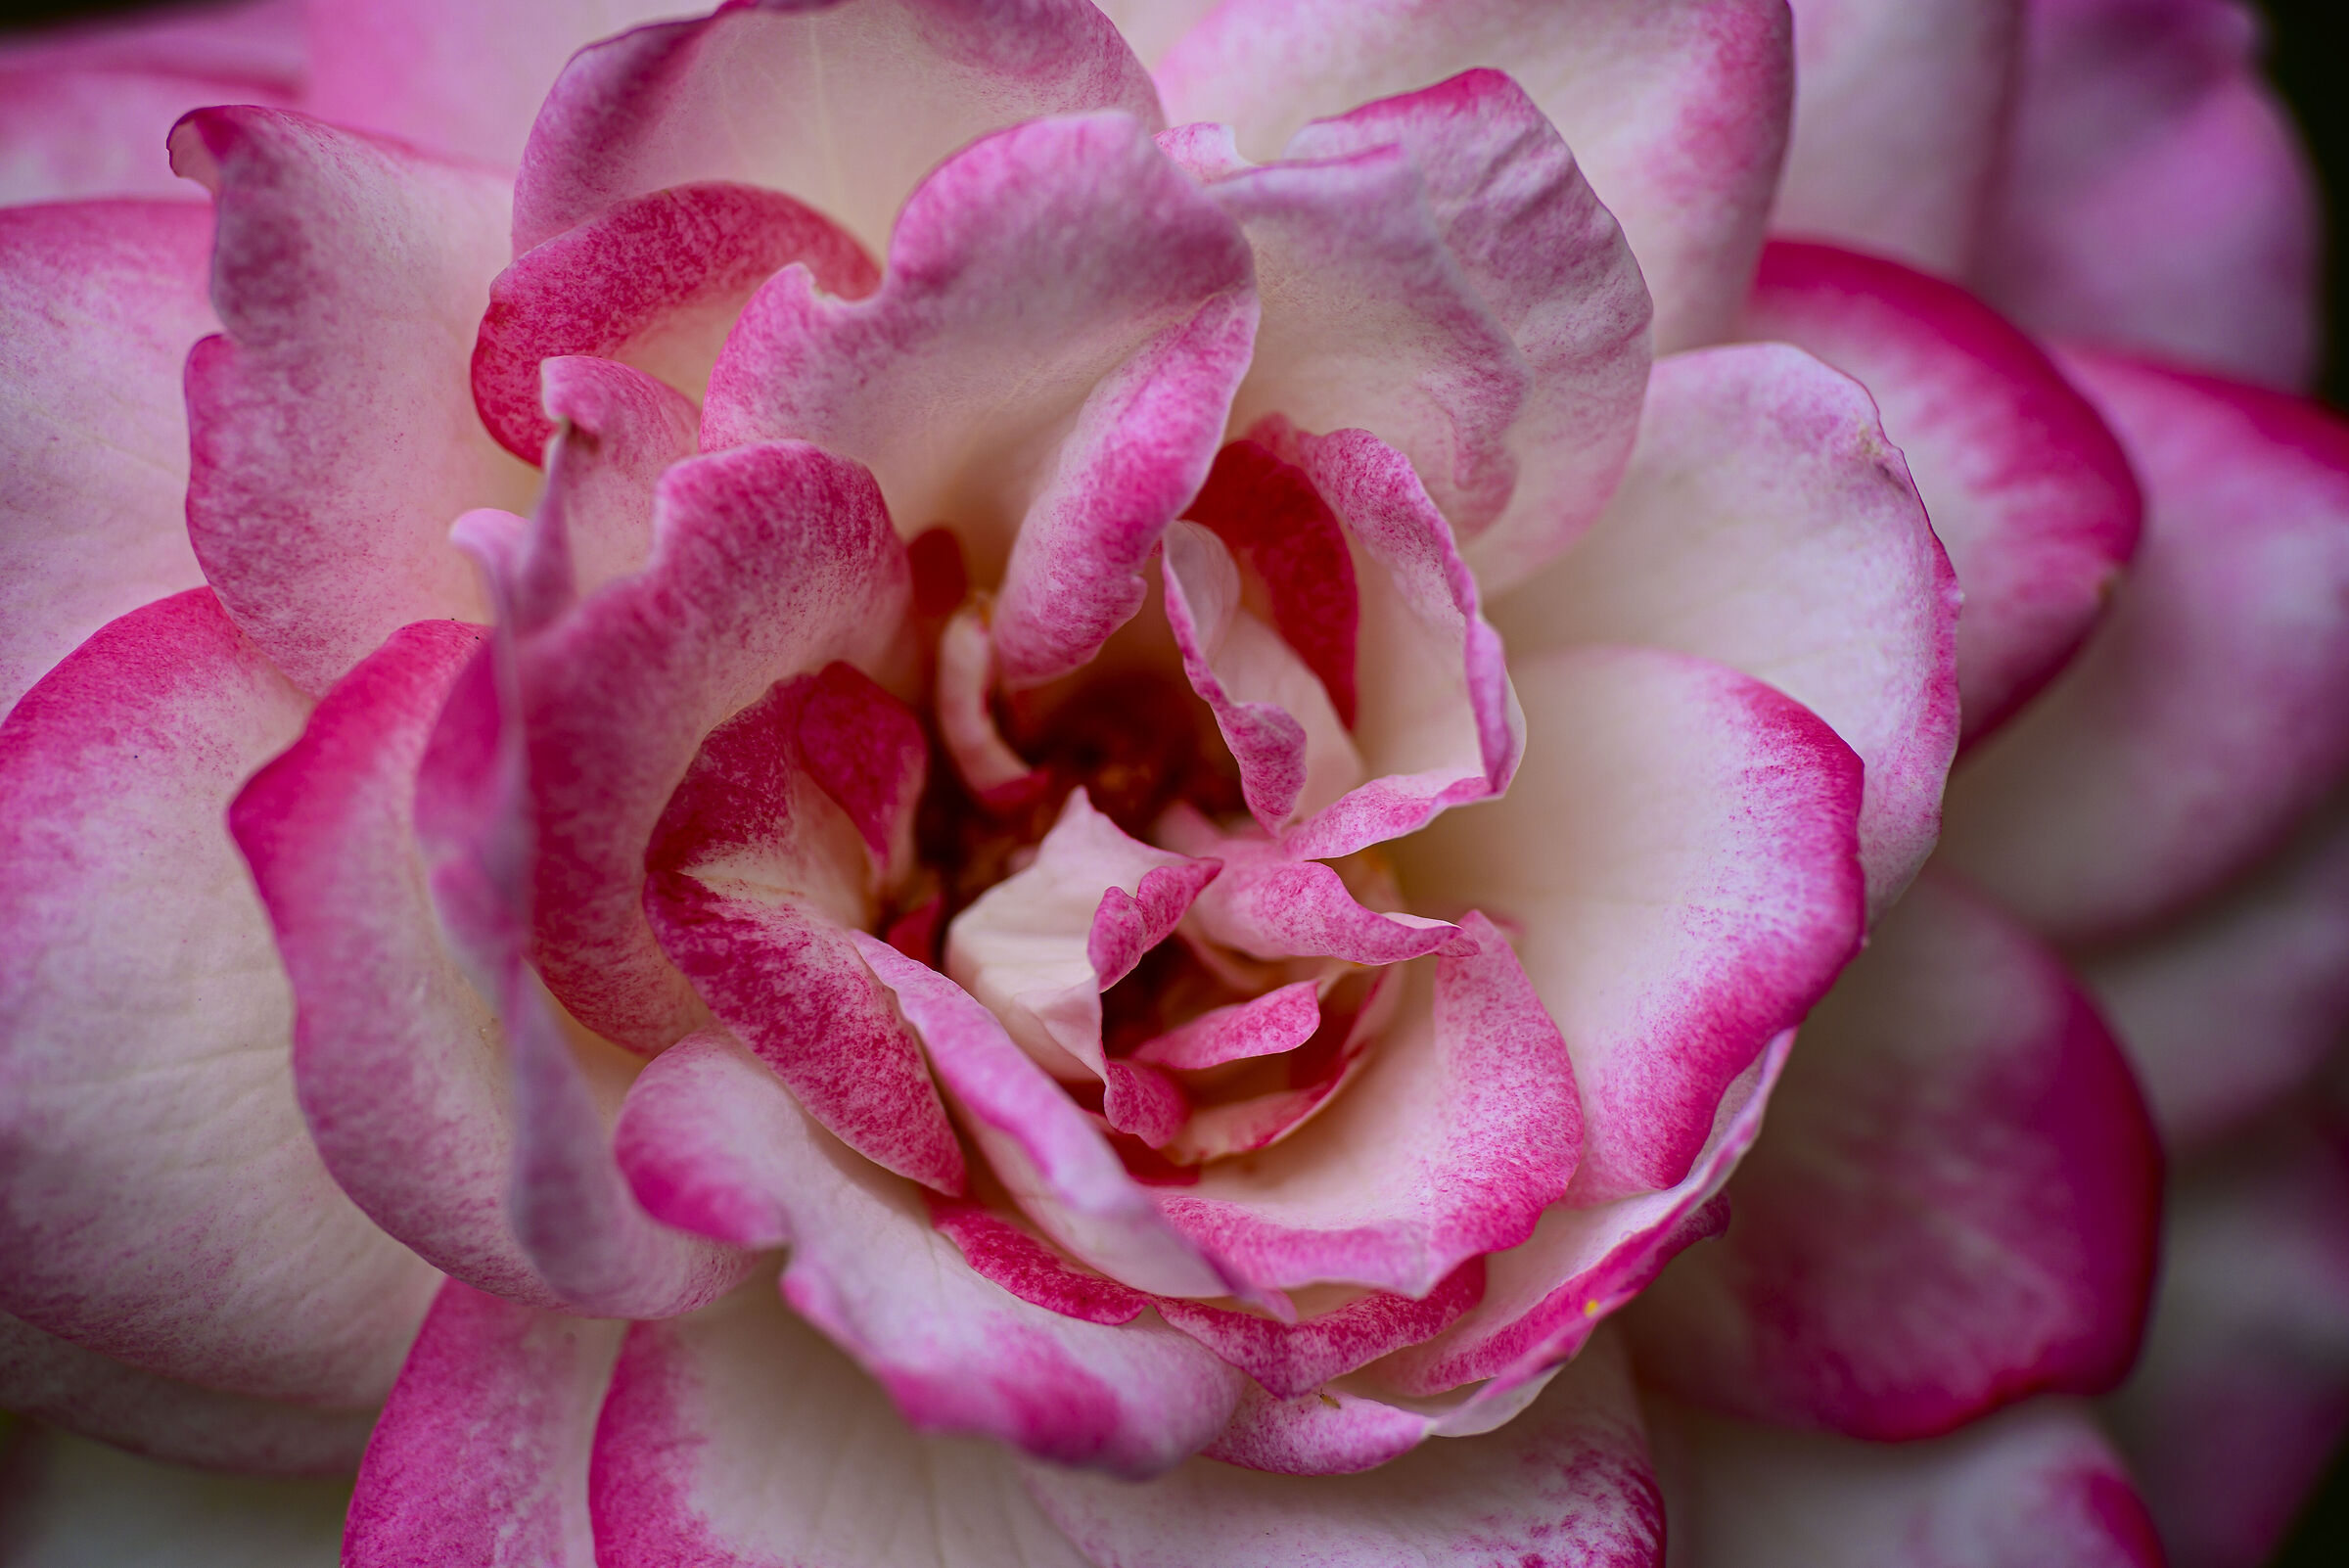 Rosa rosae...